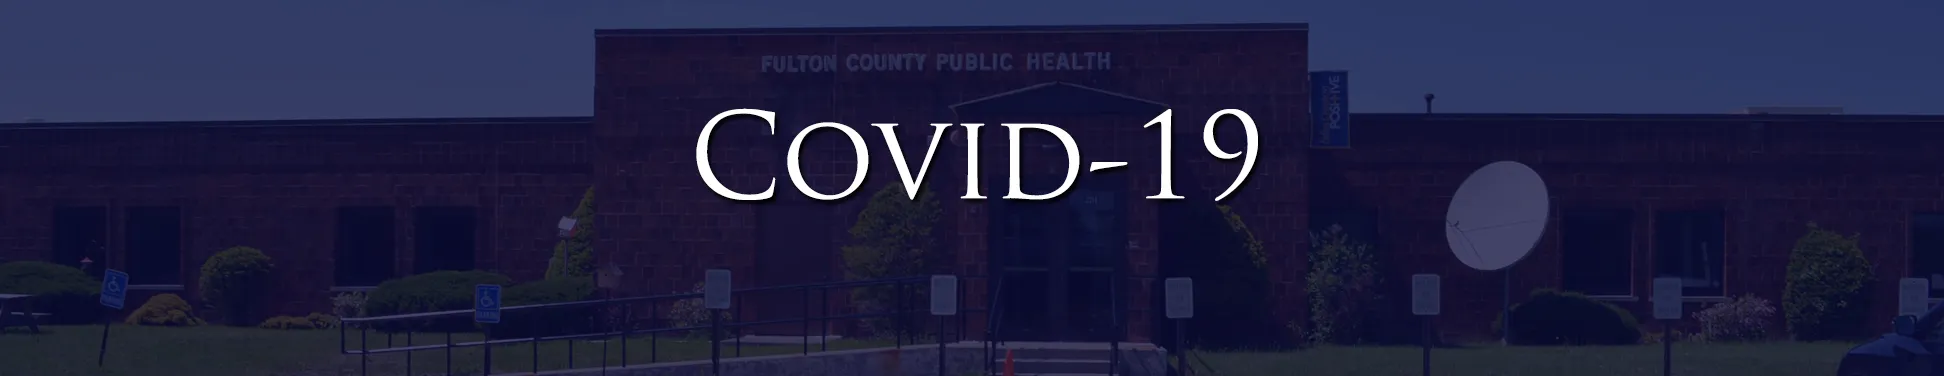 Public Health - Covid-19